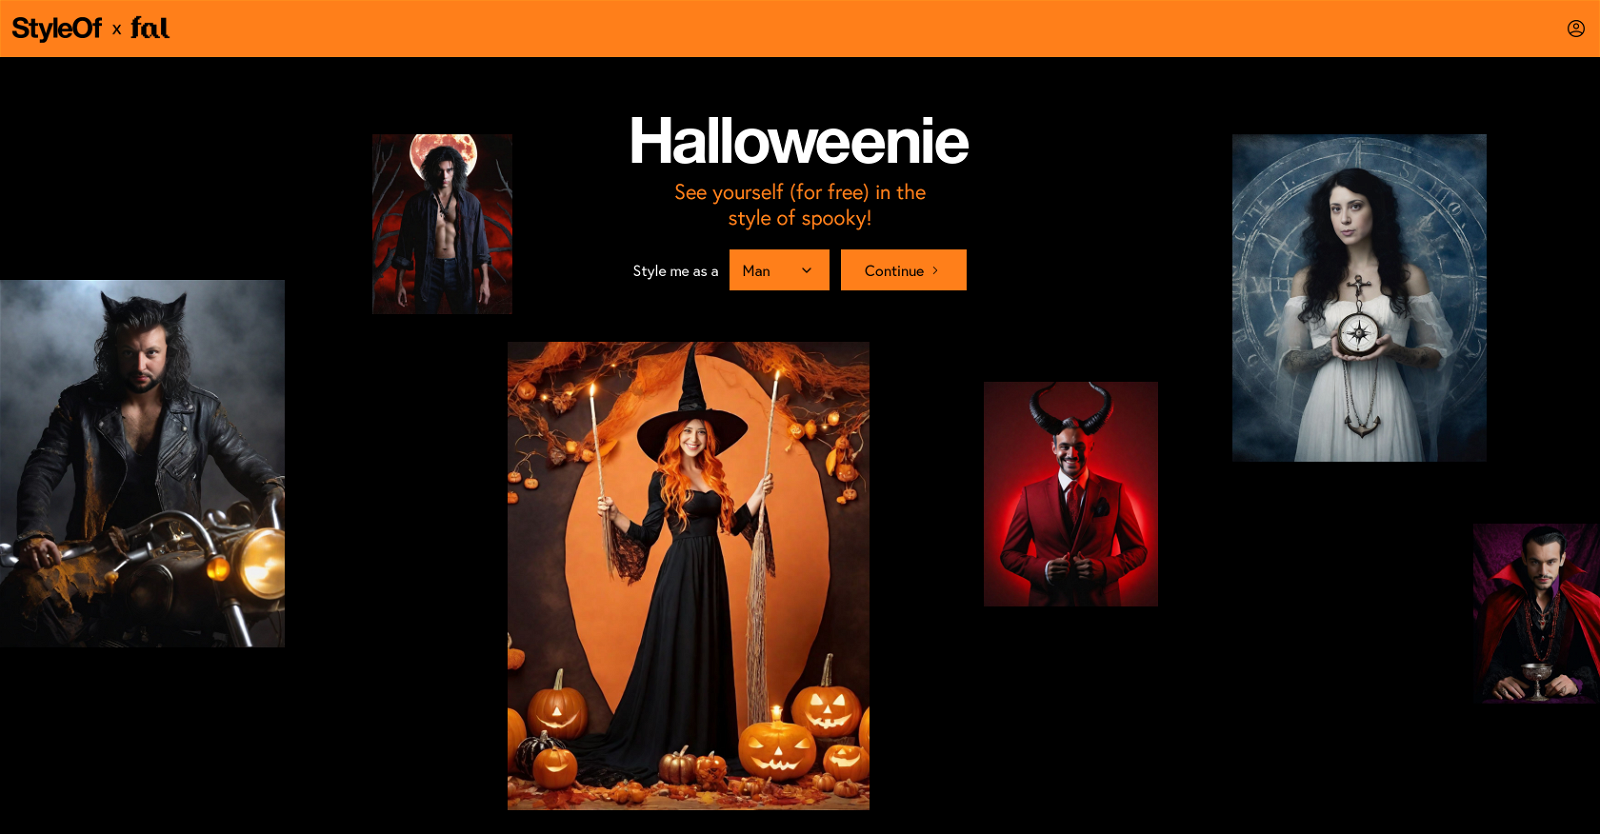 Halloweenie by StyleOf website